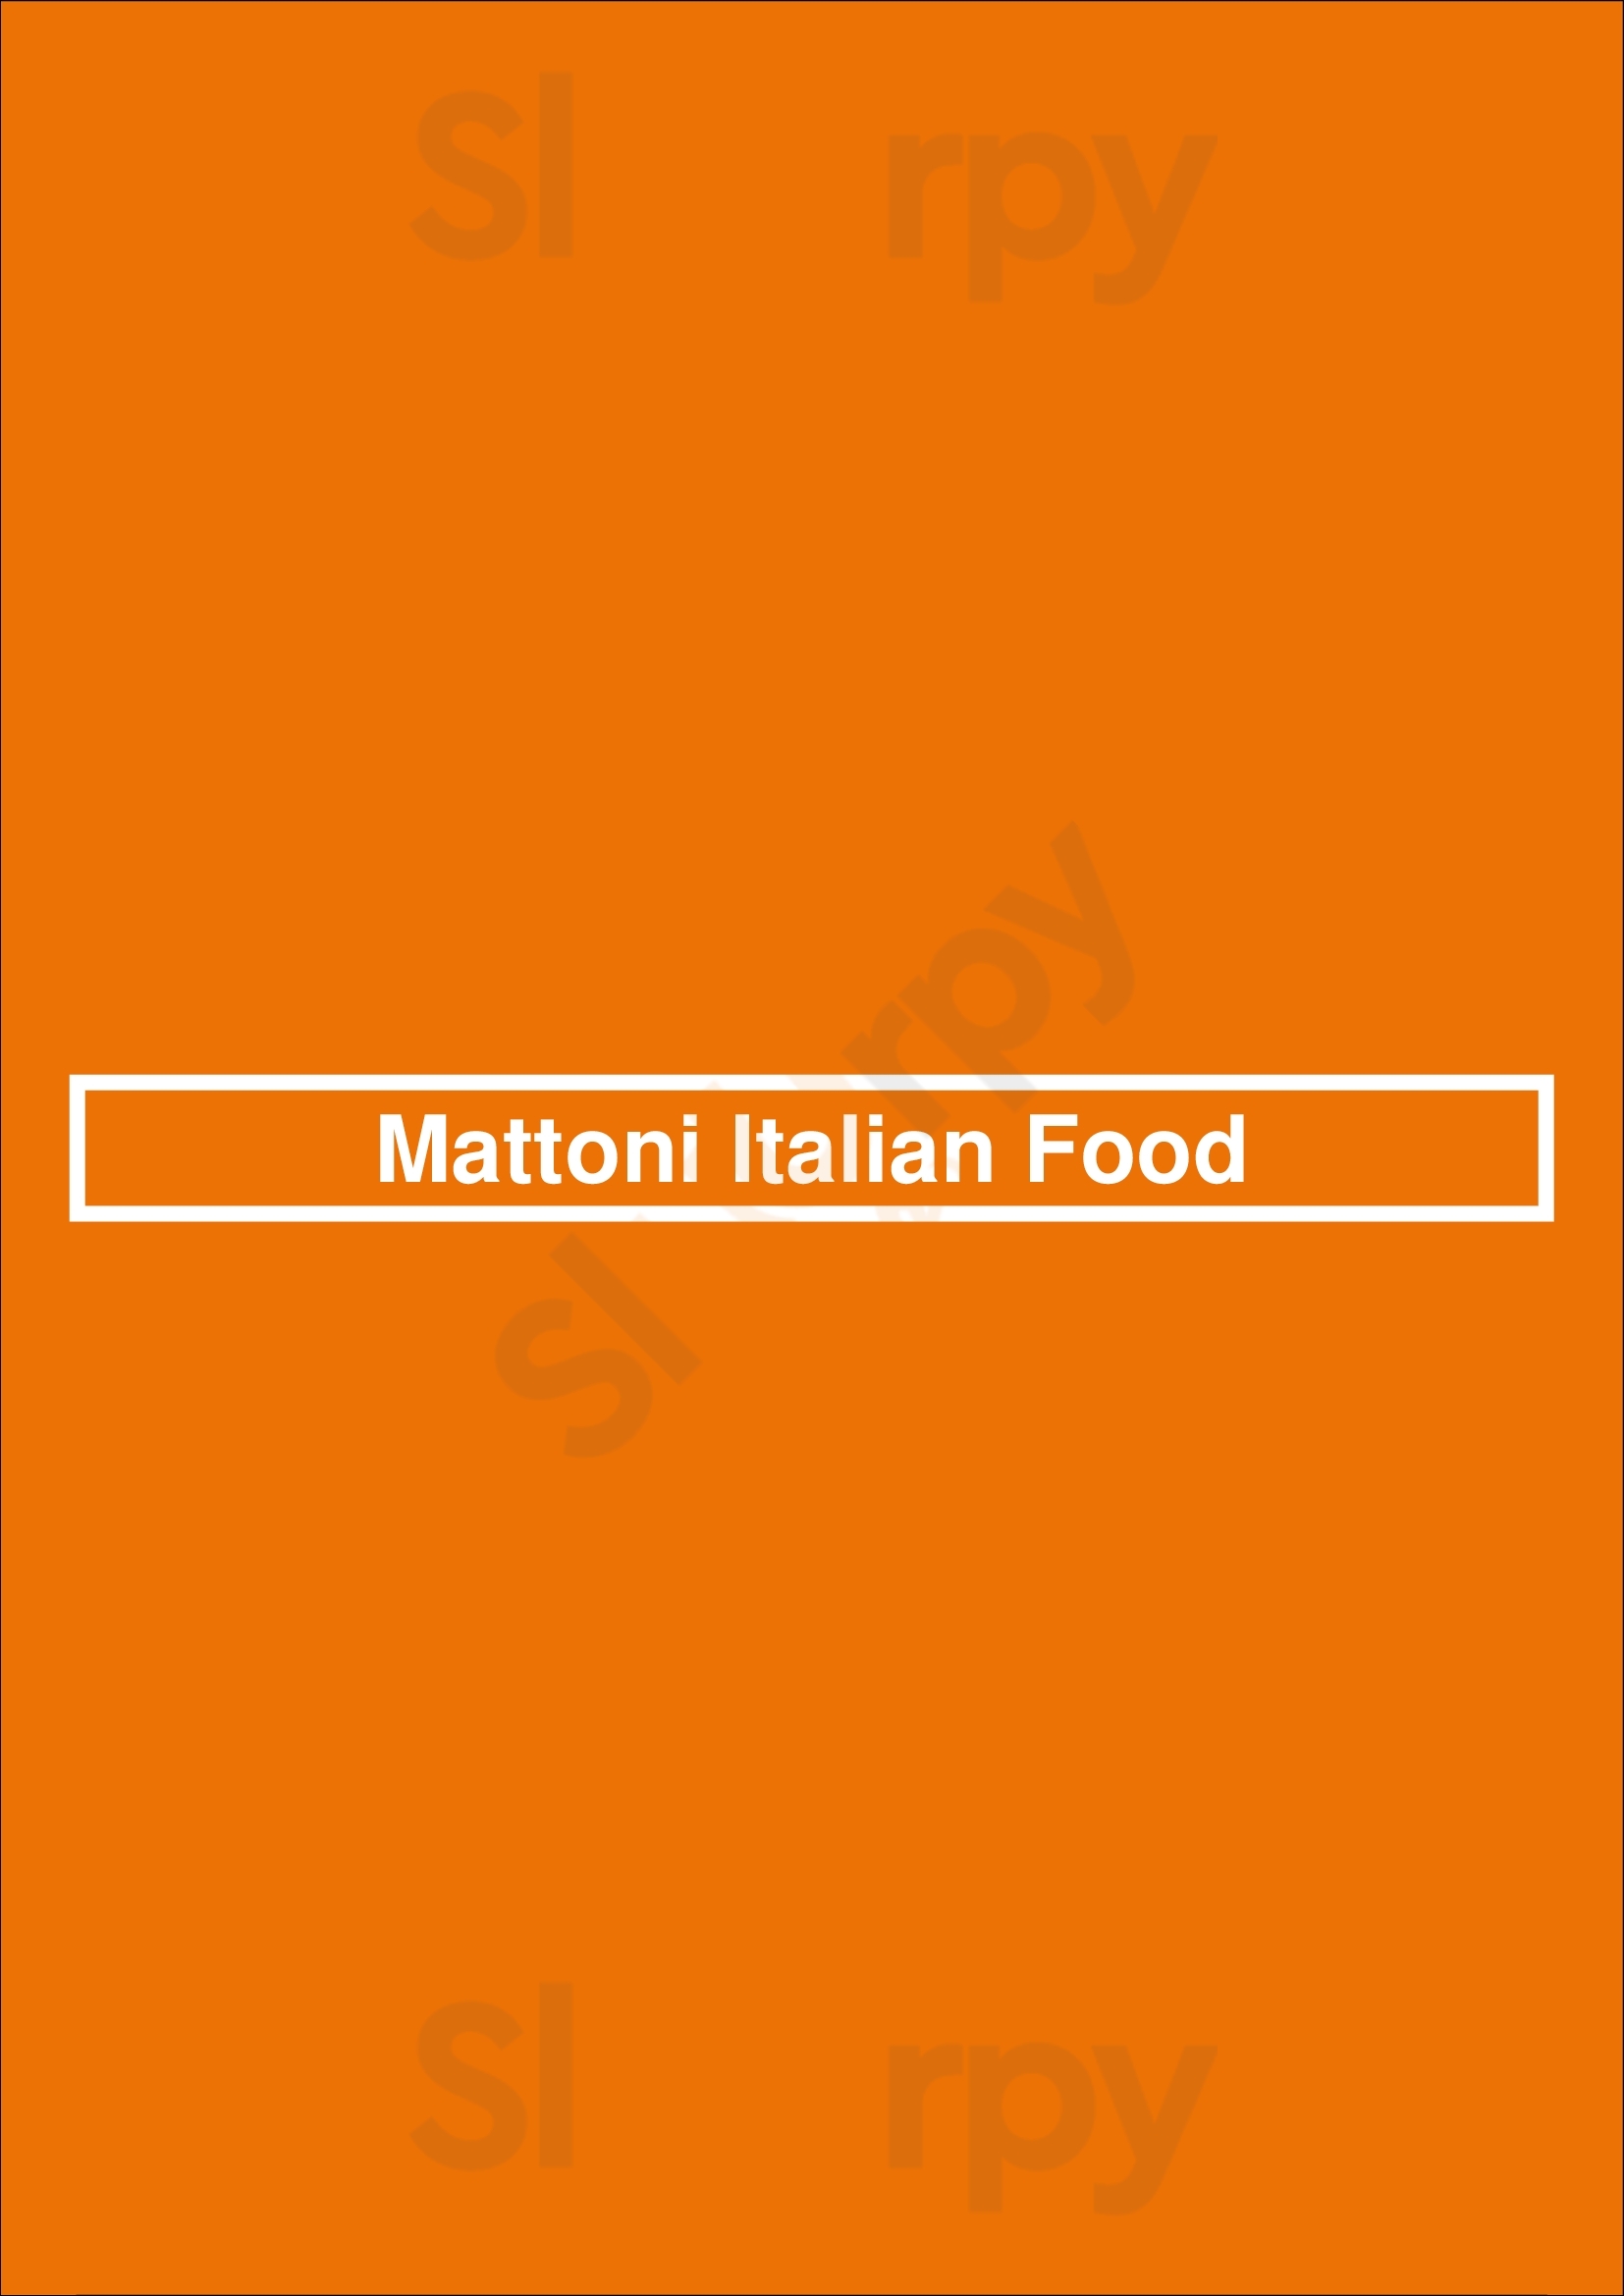 Mattoni Italian Food Peterborough Menu - 1